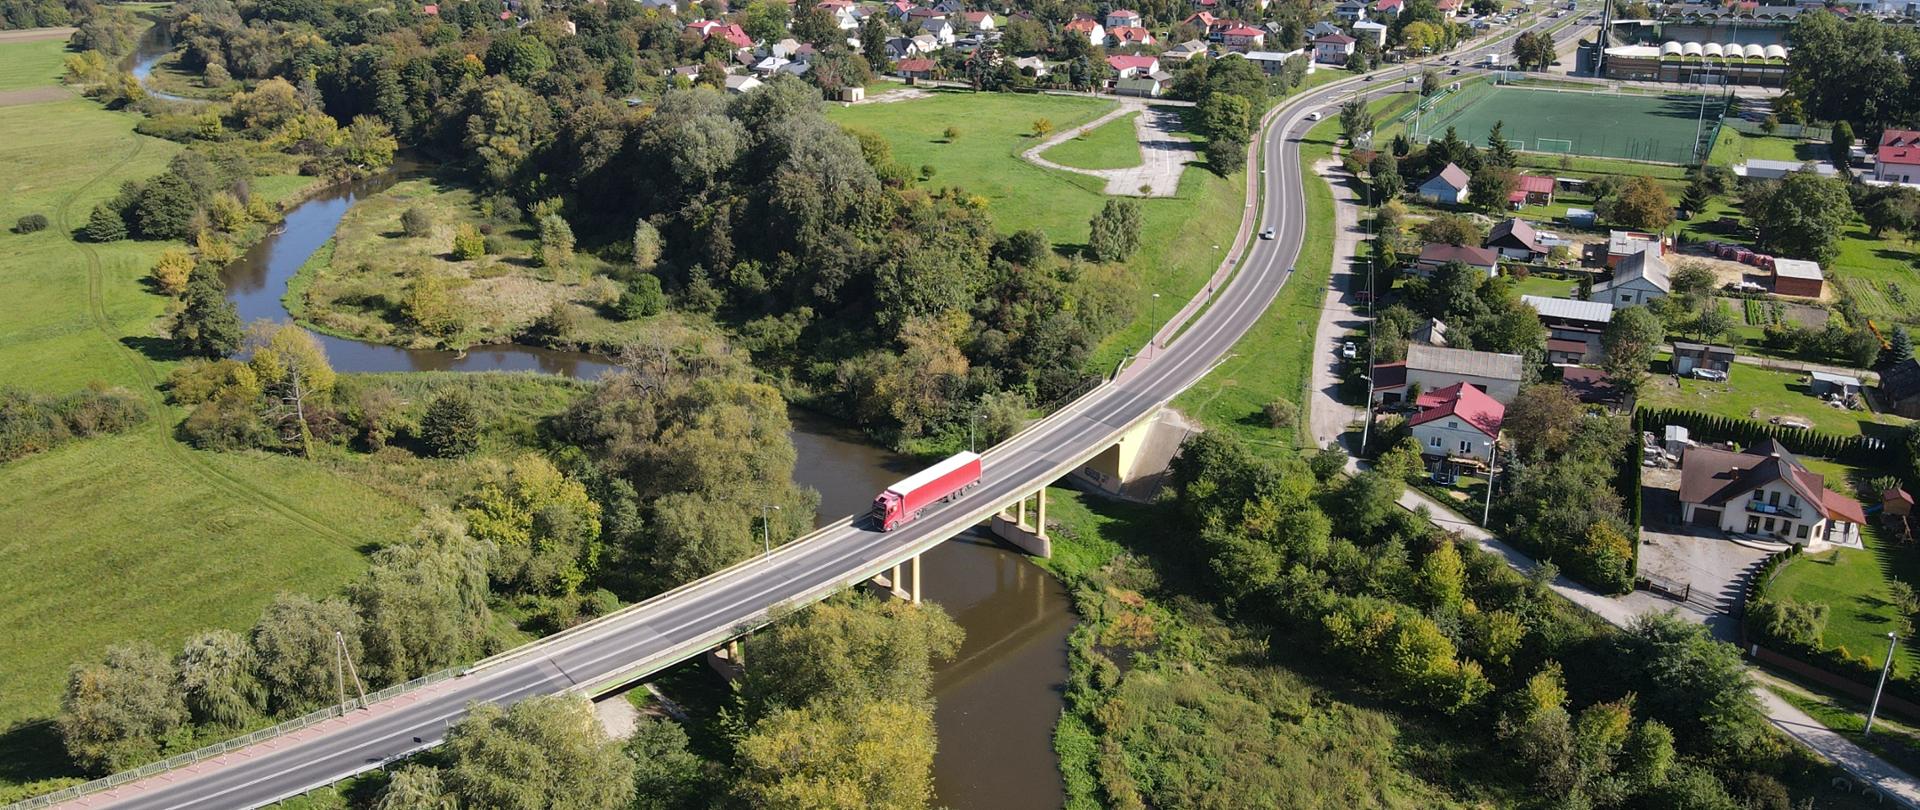 Widok z lotu ptaka na most na rzece. Zielone brzegi z bujną roślinnością. Po moście jedzie ciężarówka. W tle widoczne zabudowania mieszkalne.